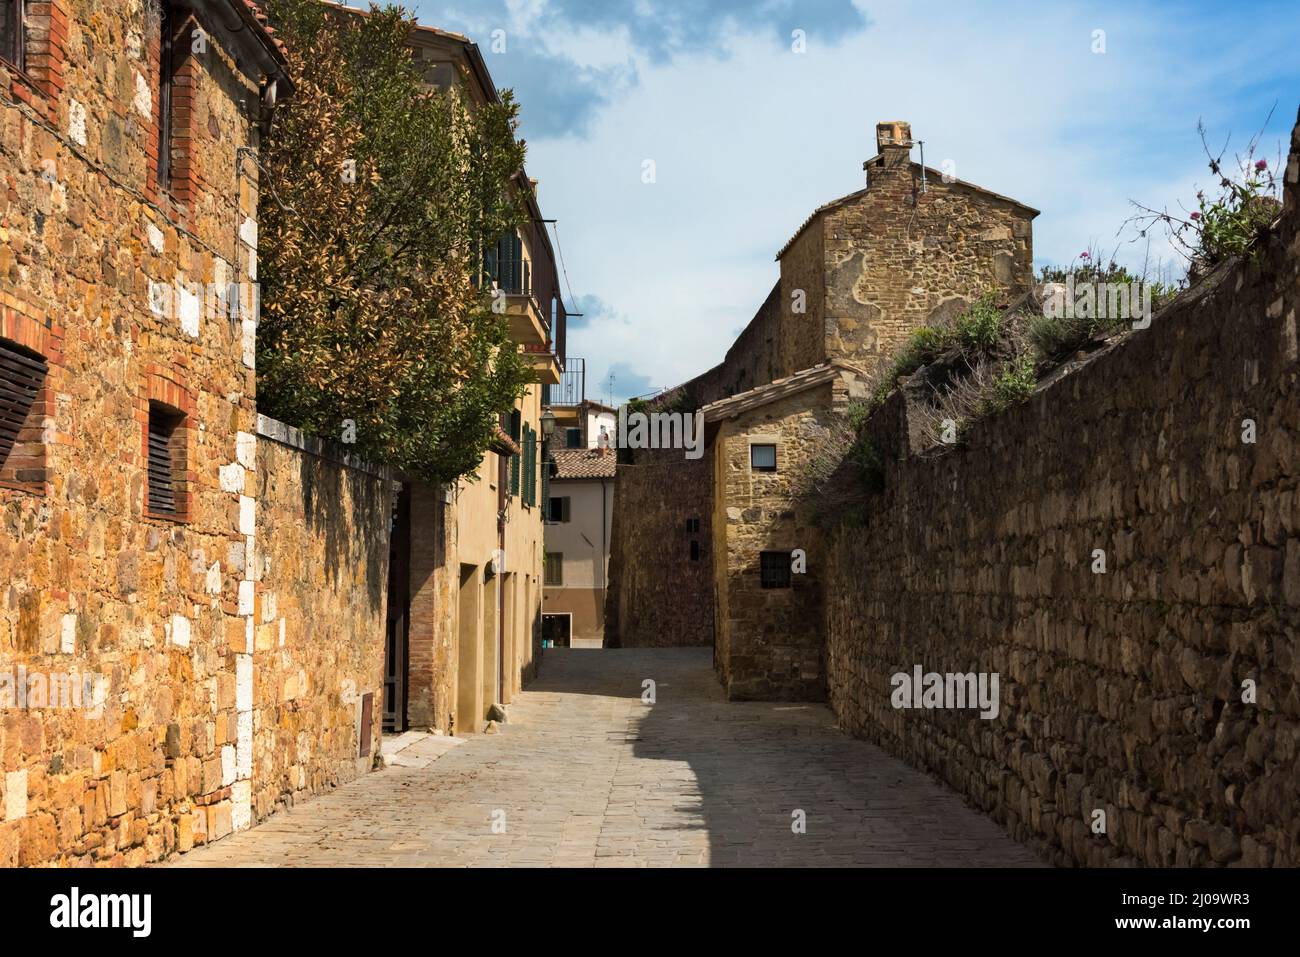 Ville historique de San Quirico d'Orcia, province de Sienne, région Toscane, Italie Banque D'Images